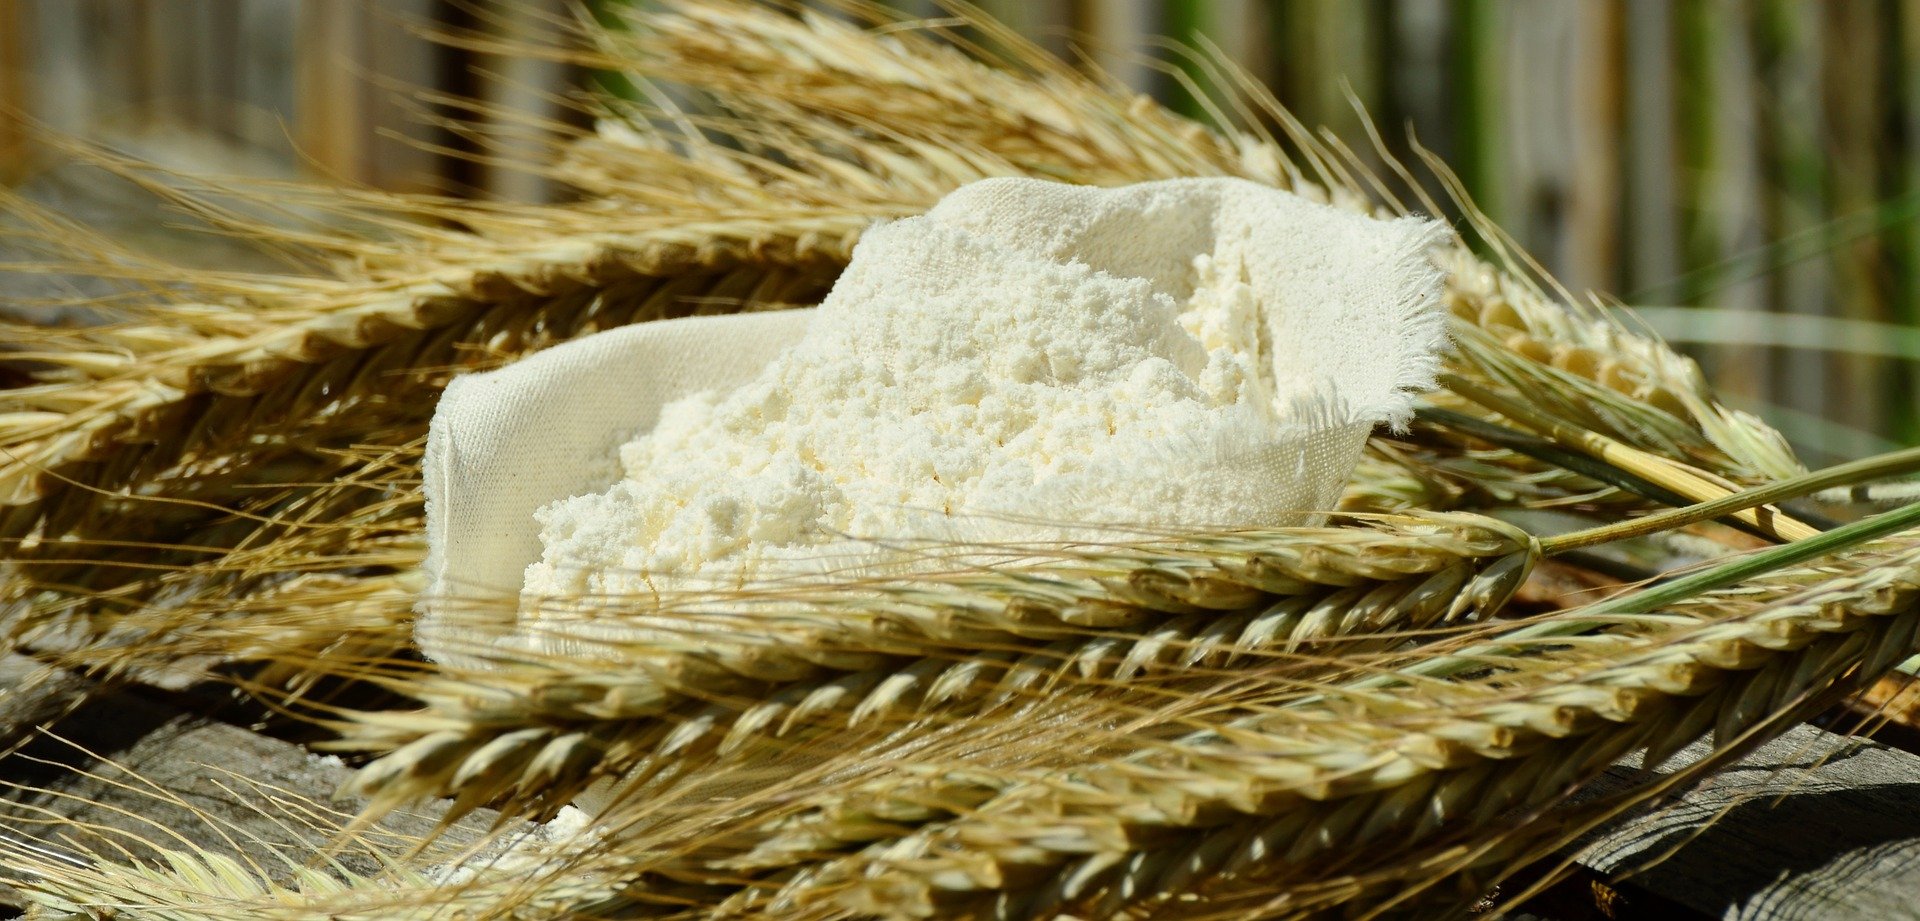 flour-1528338_1920.jpg